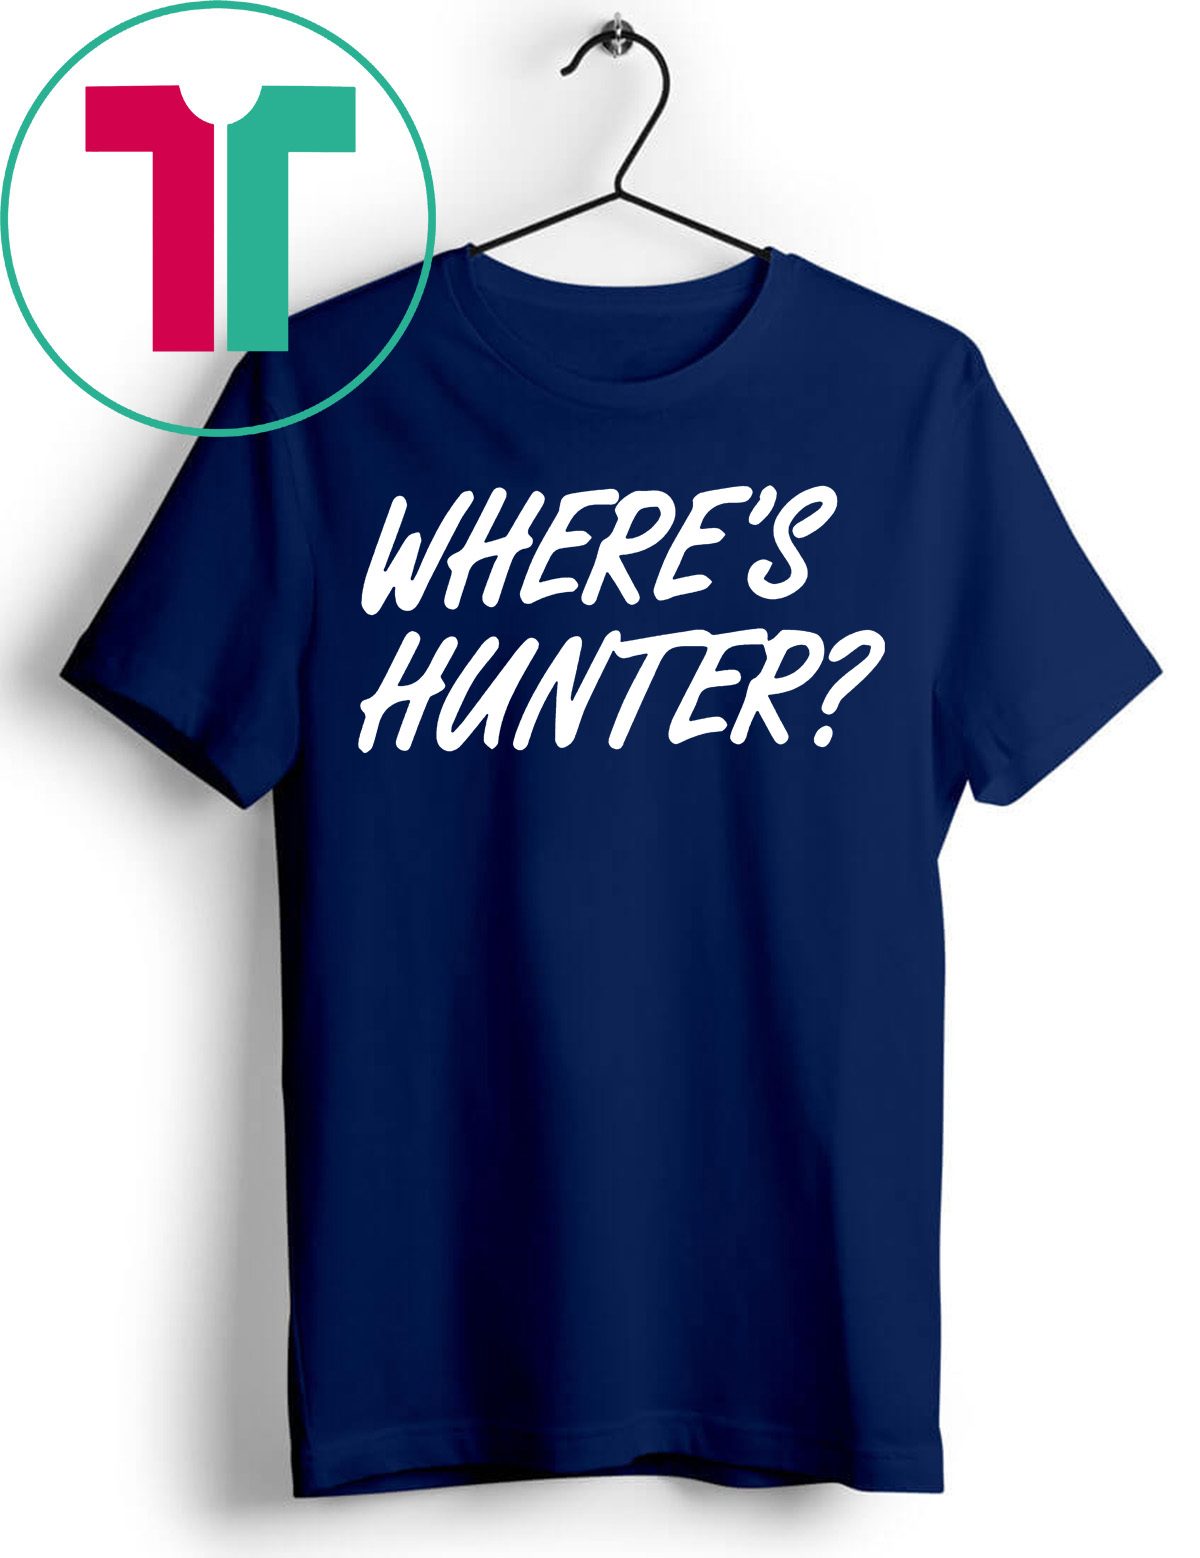 Where’s Hunter Biden T-Shirts - Reviewshirts Office